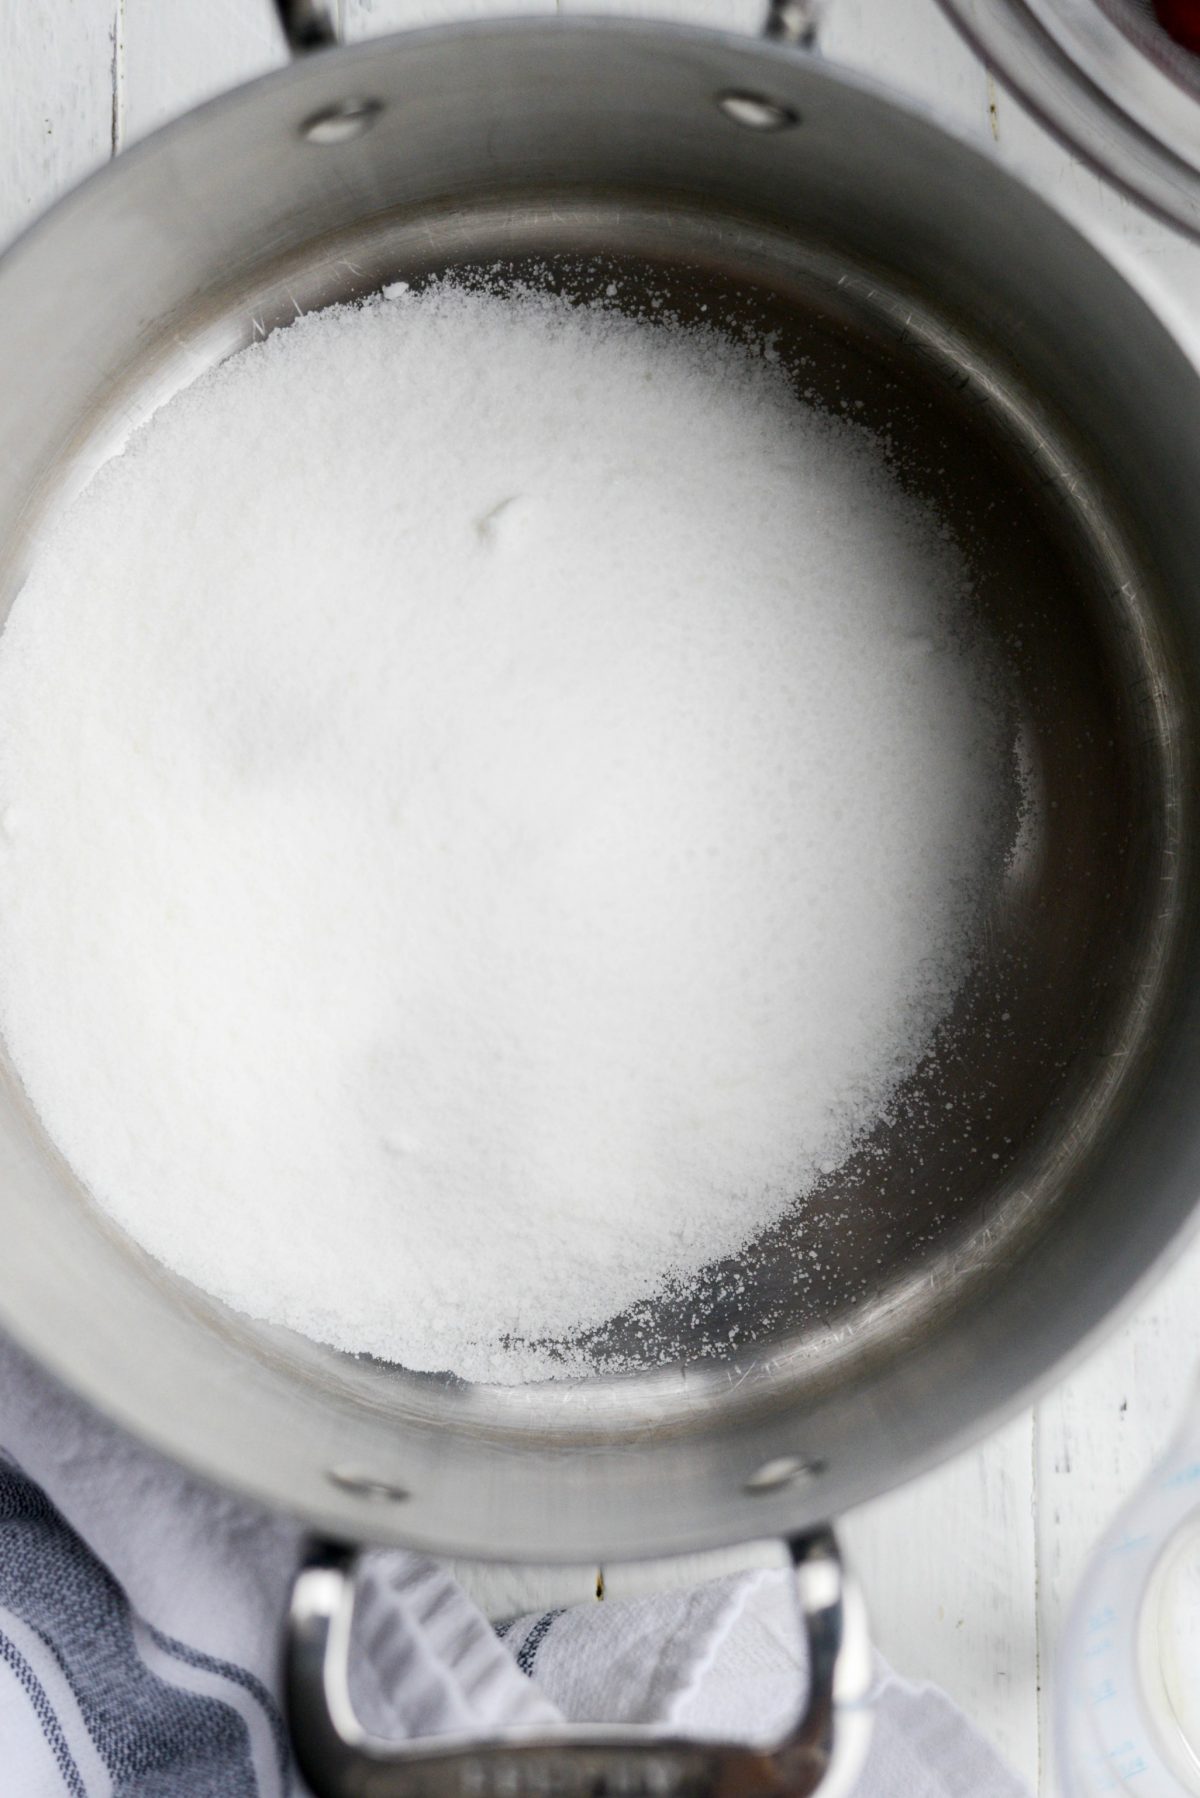 sugar in sauce pan